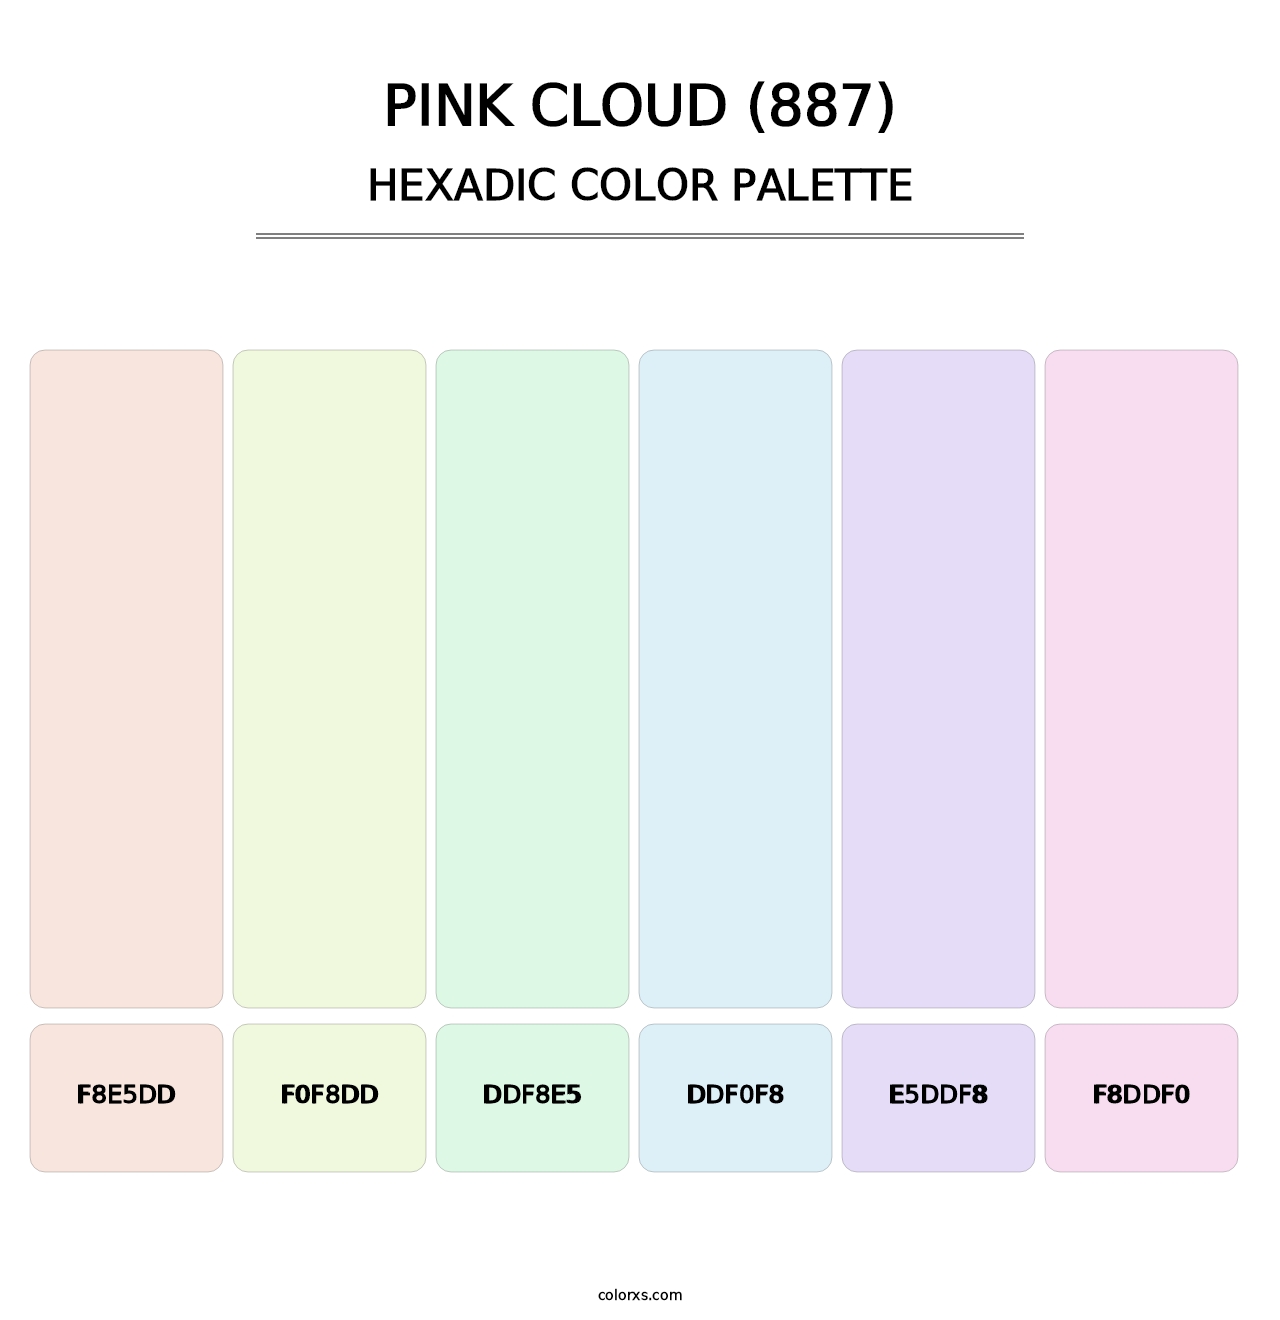 Pink Cloud (887) - Hexadic Color Palette